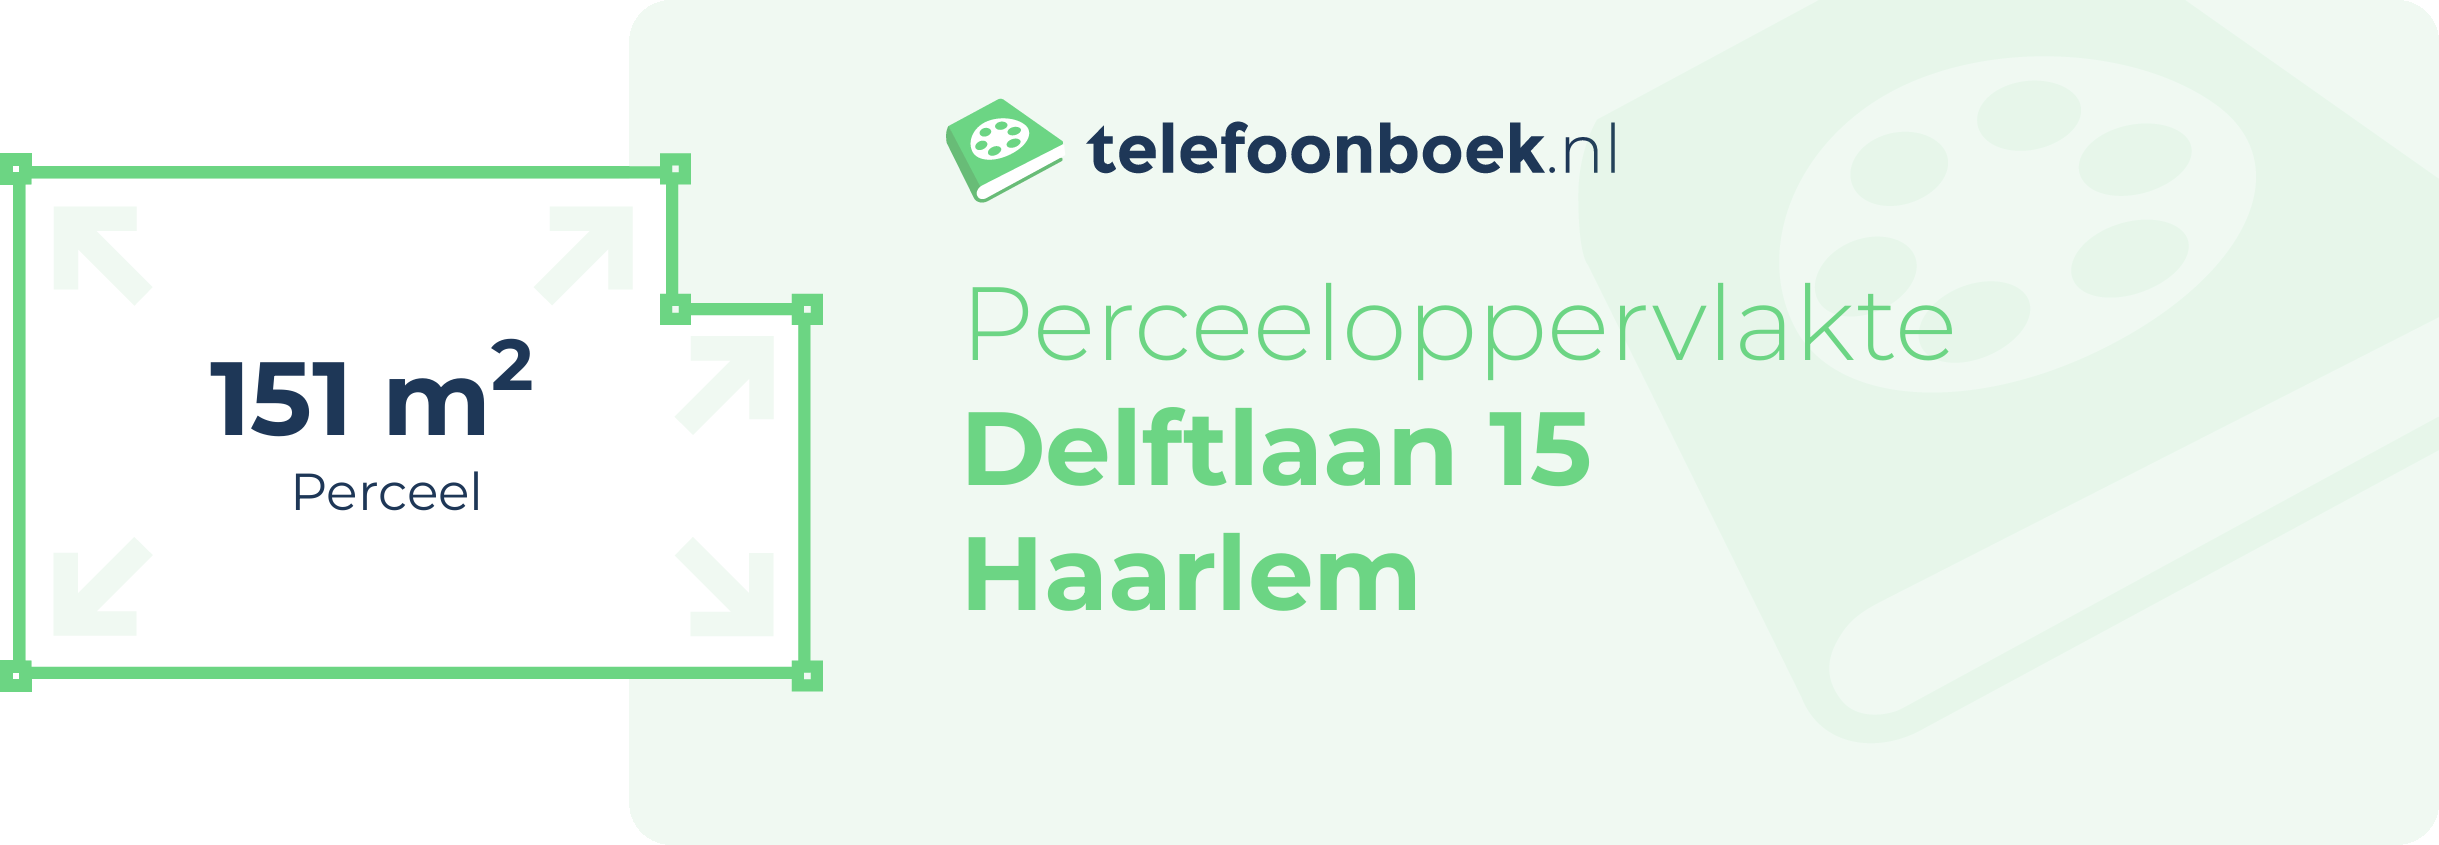 Perceeloppervlakte Delftlaan 15 Haarlem